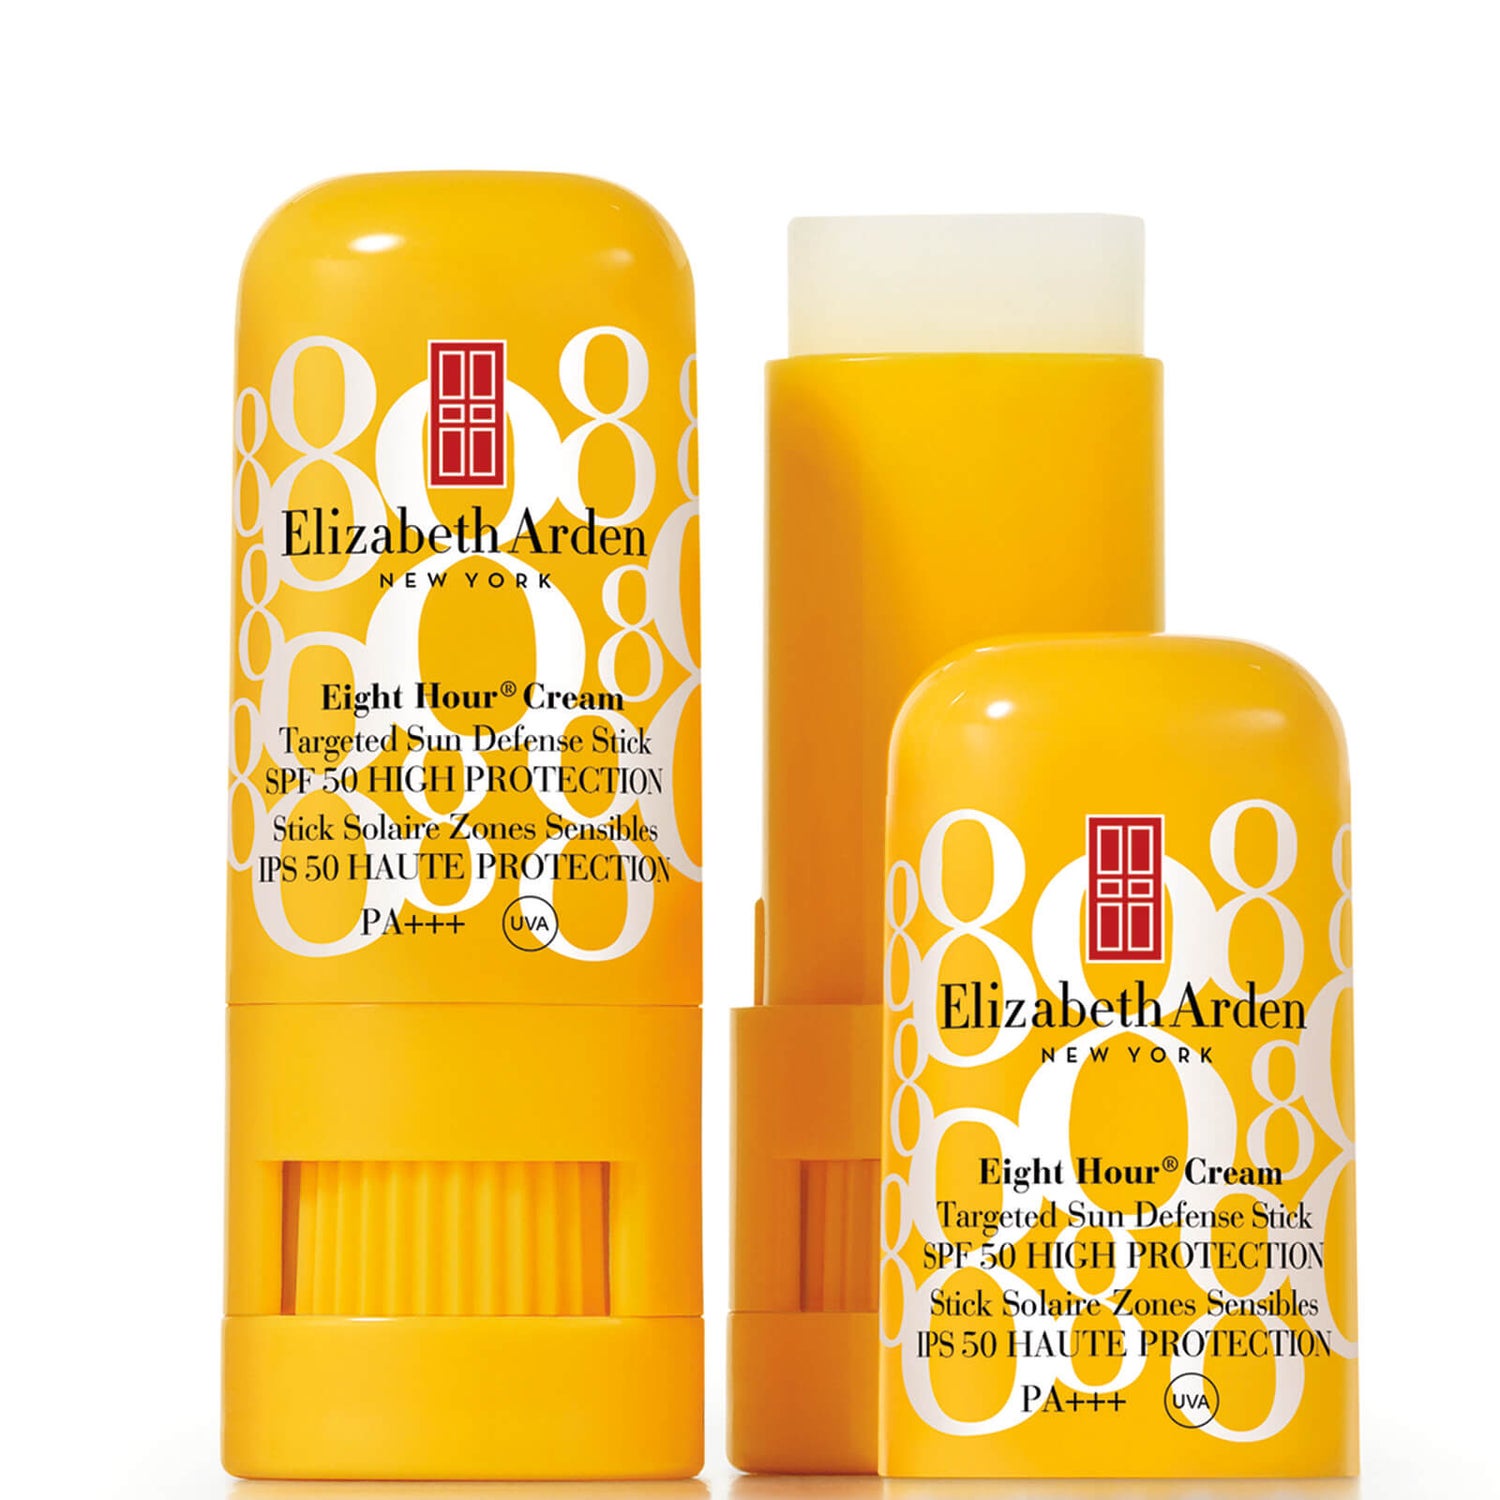 Elizabeth Arden Eight Hour Cream Targeted Sun Defense Stick -aurinkorasvapuikko, SPF 50 High Protection